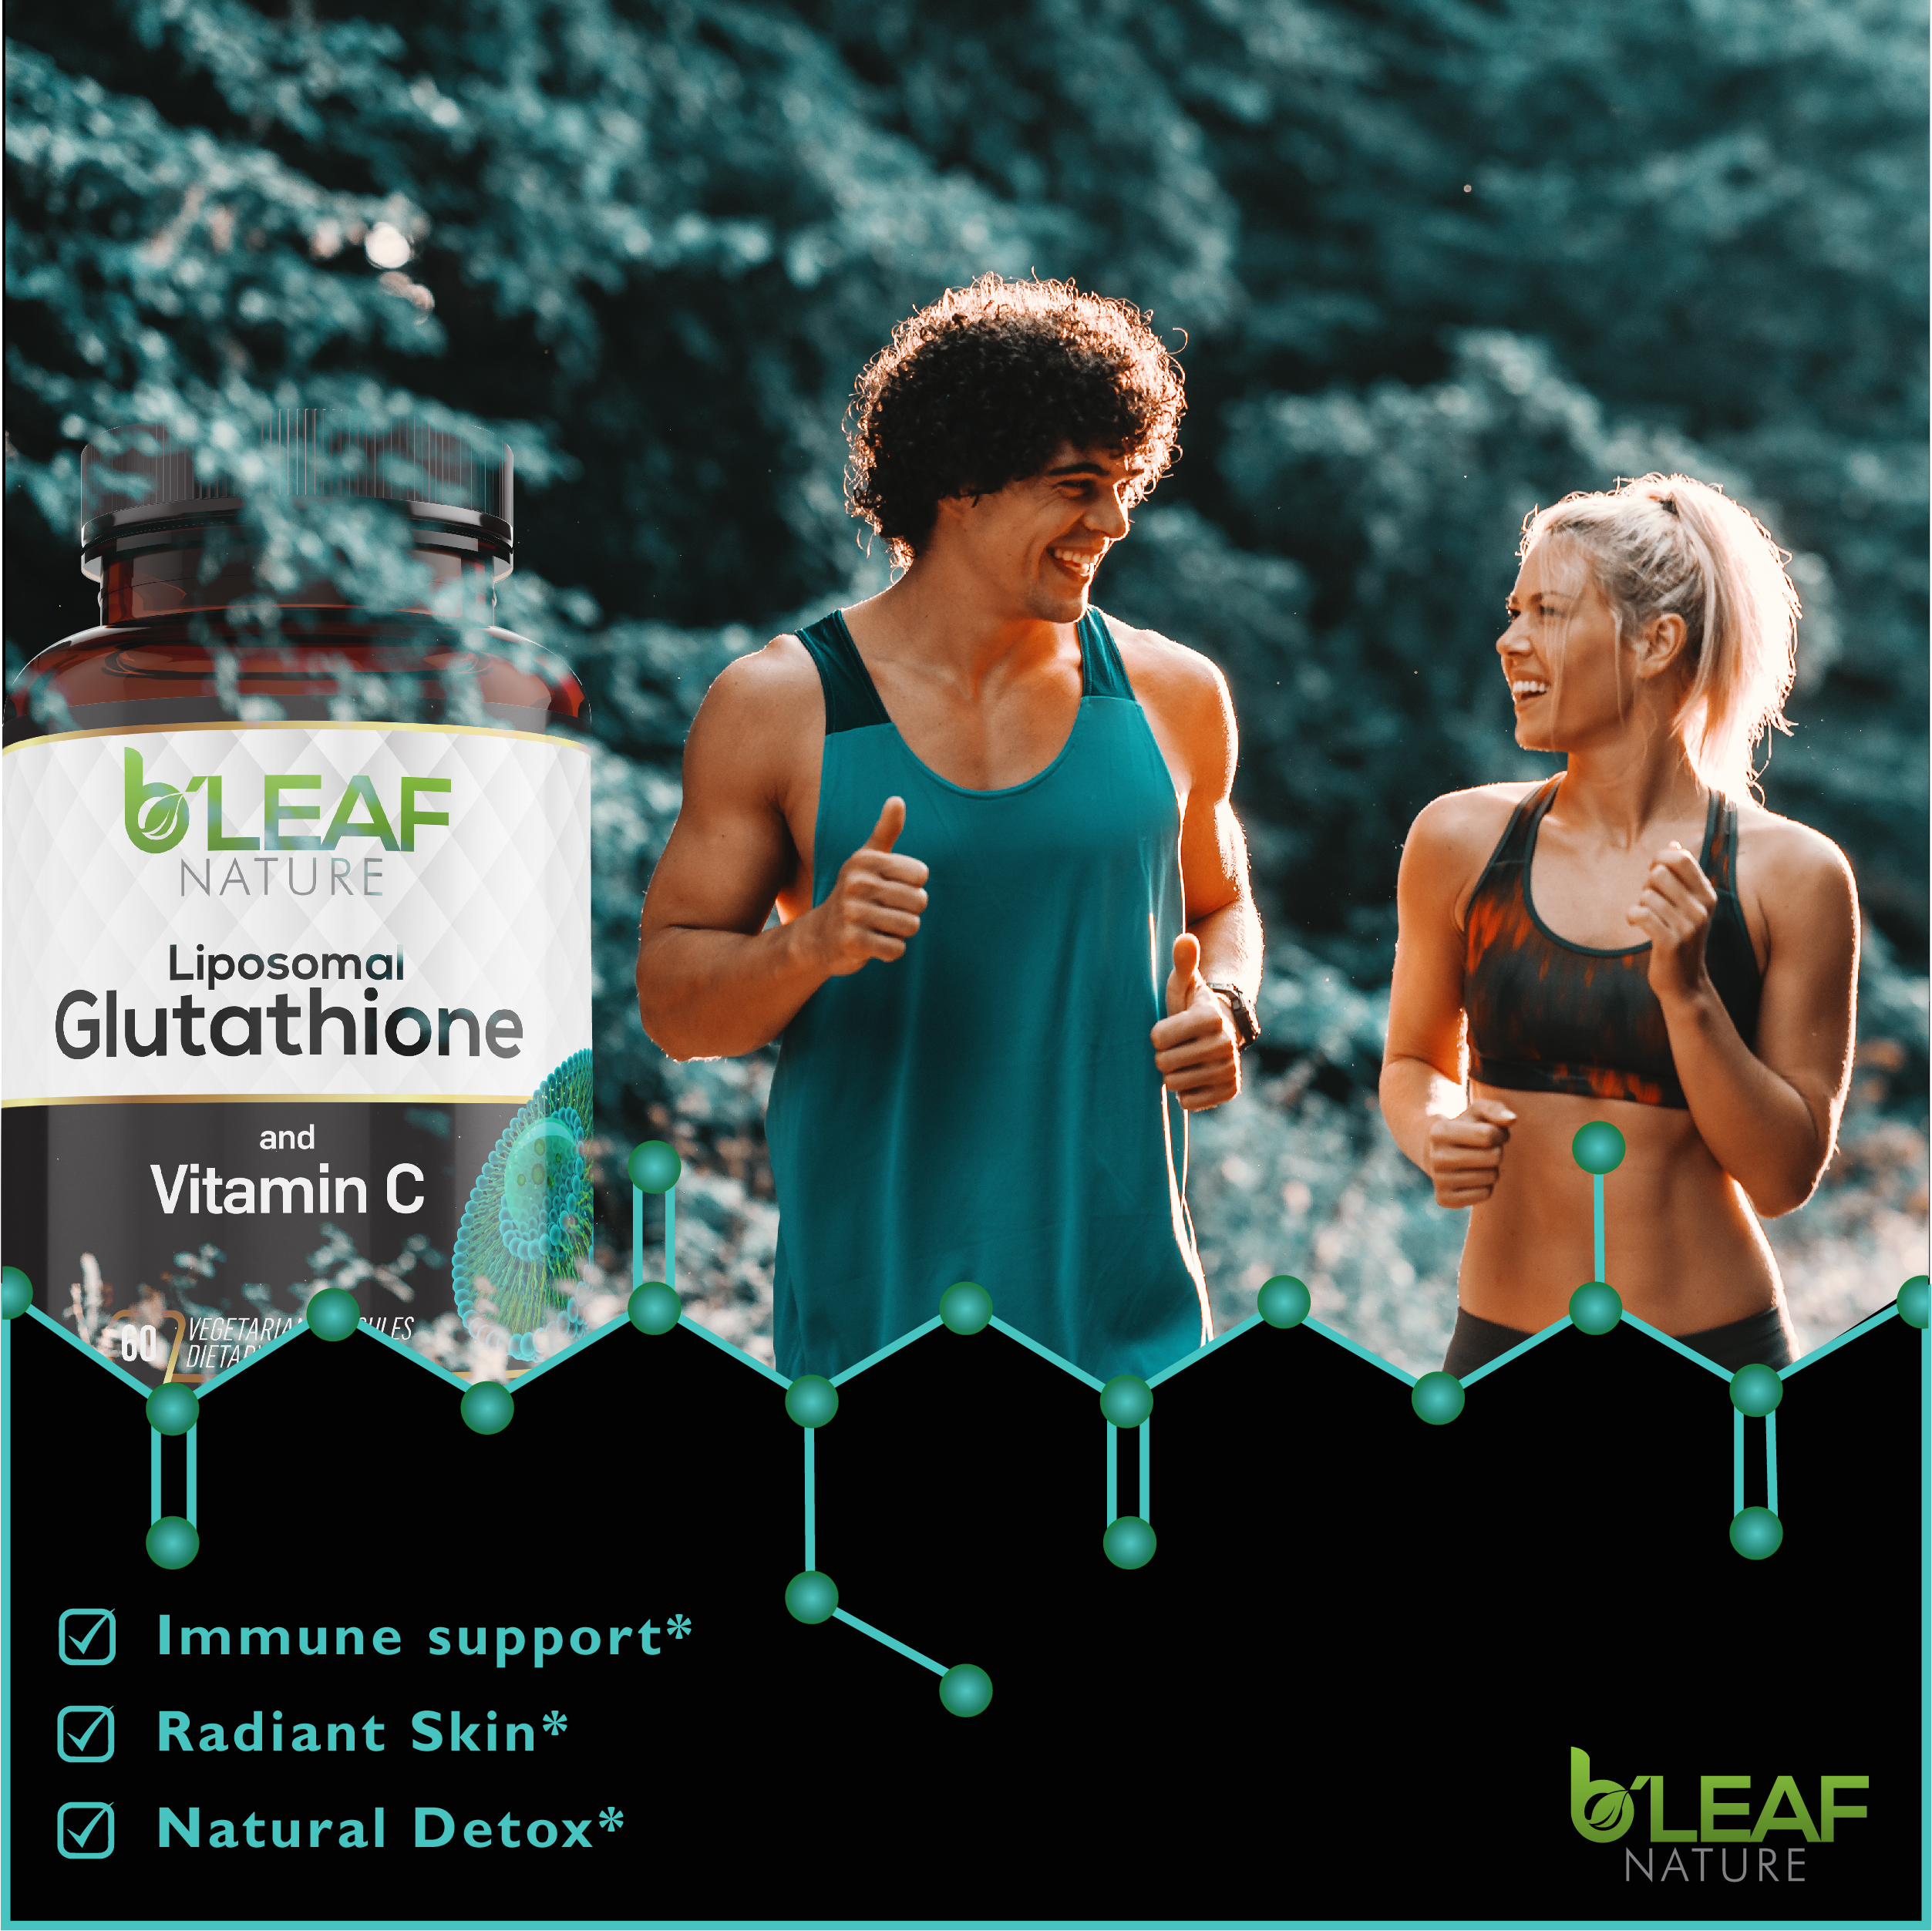 Liposomal Glutathione by B’Leaf Nature